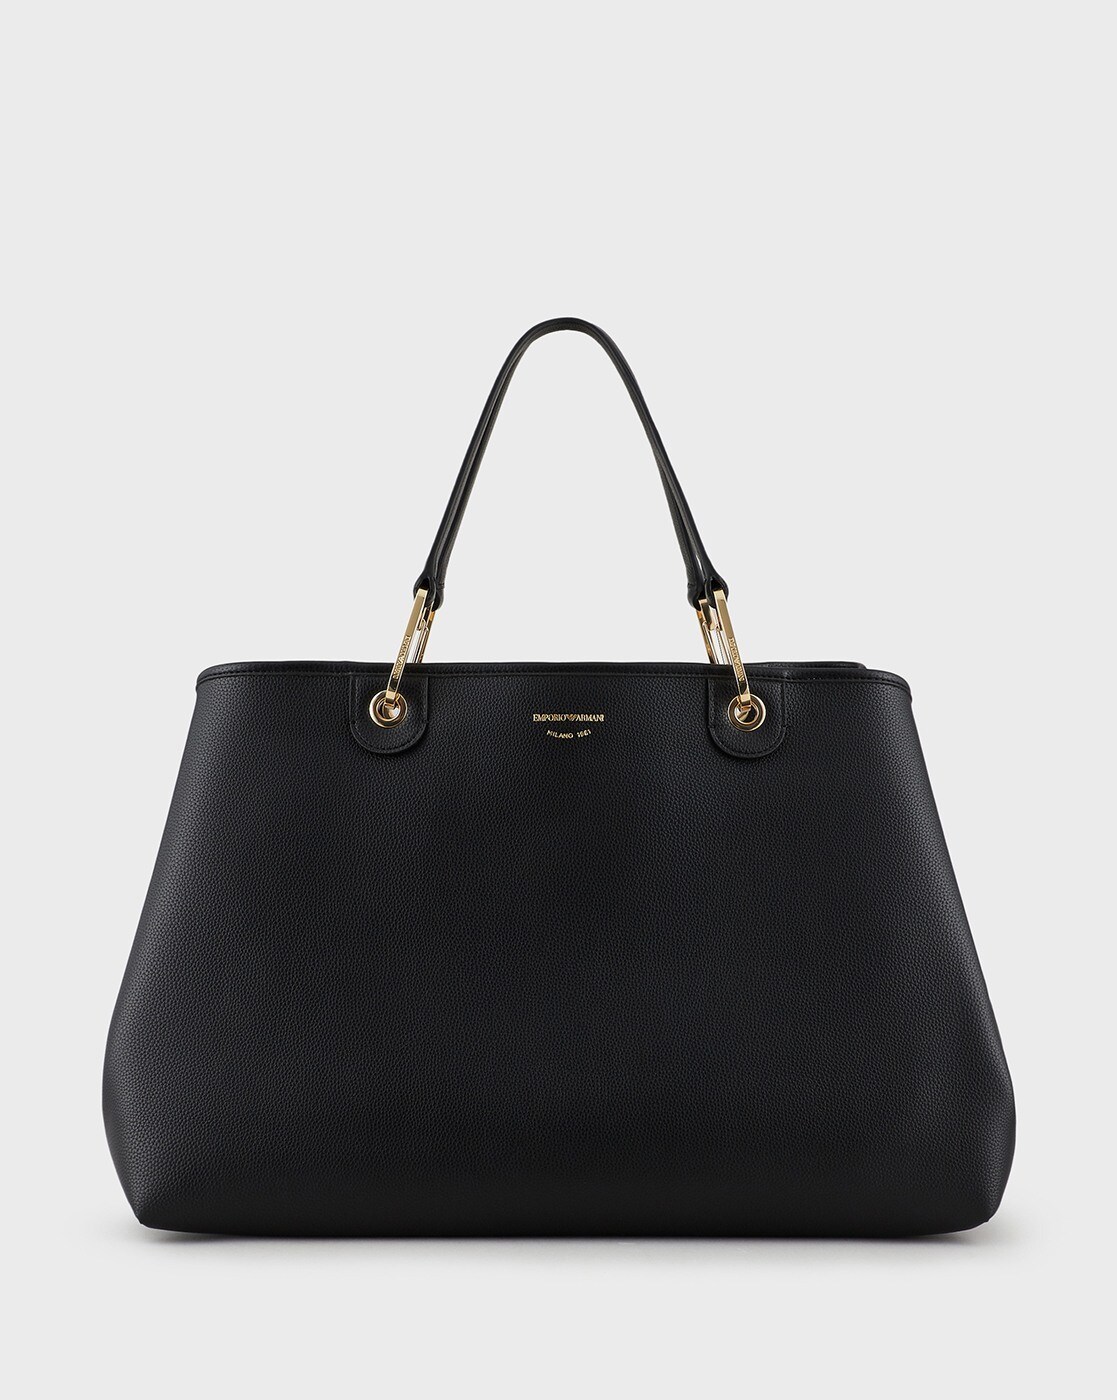 Emporio Armani women's bag with all-over logo Black | Caposerio.com